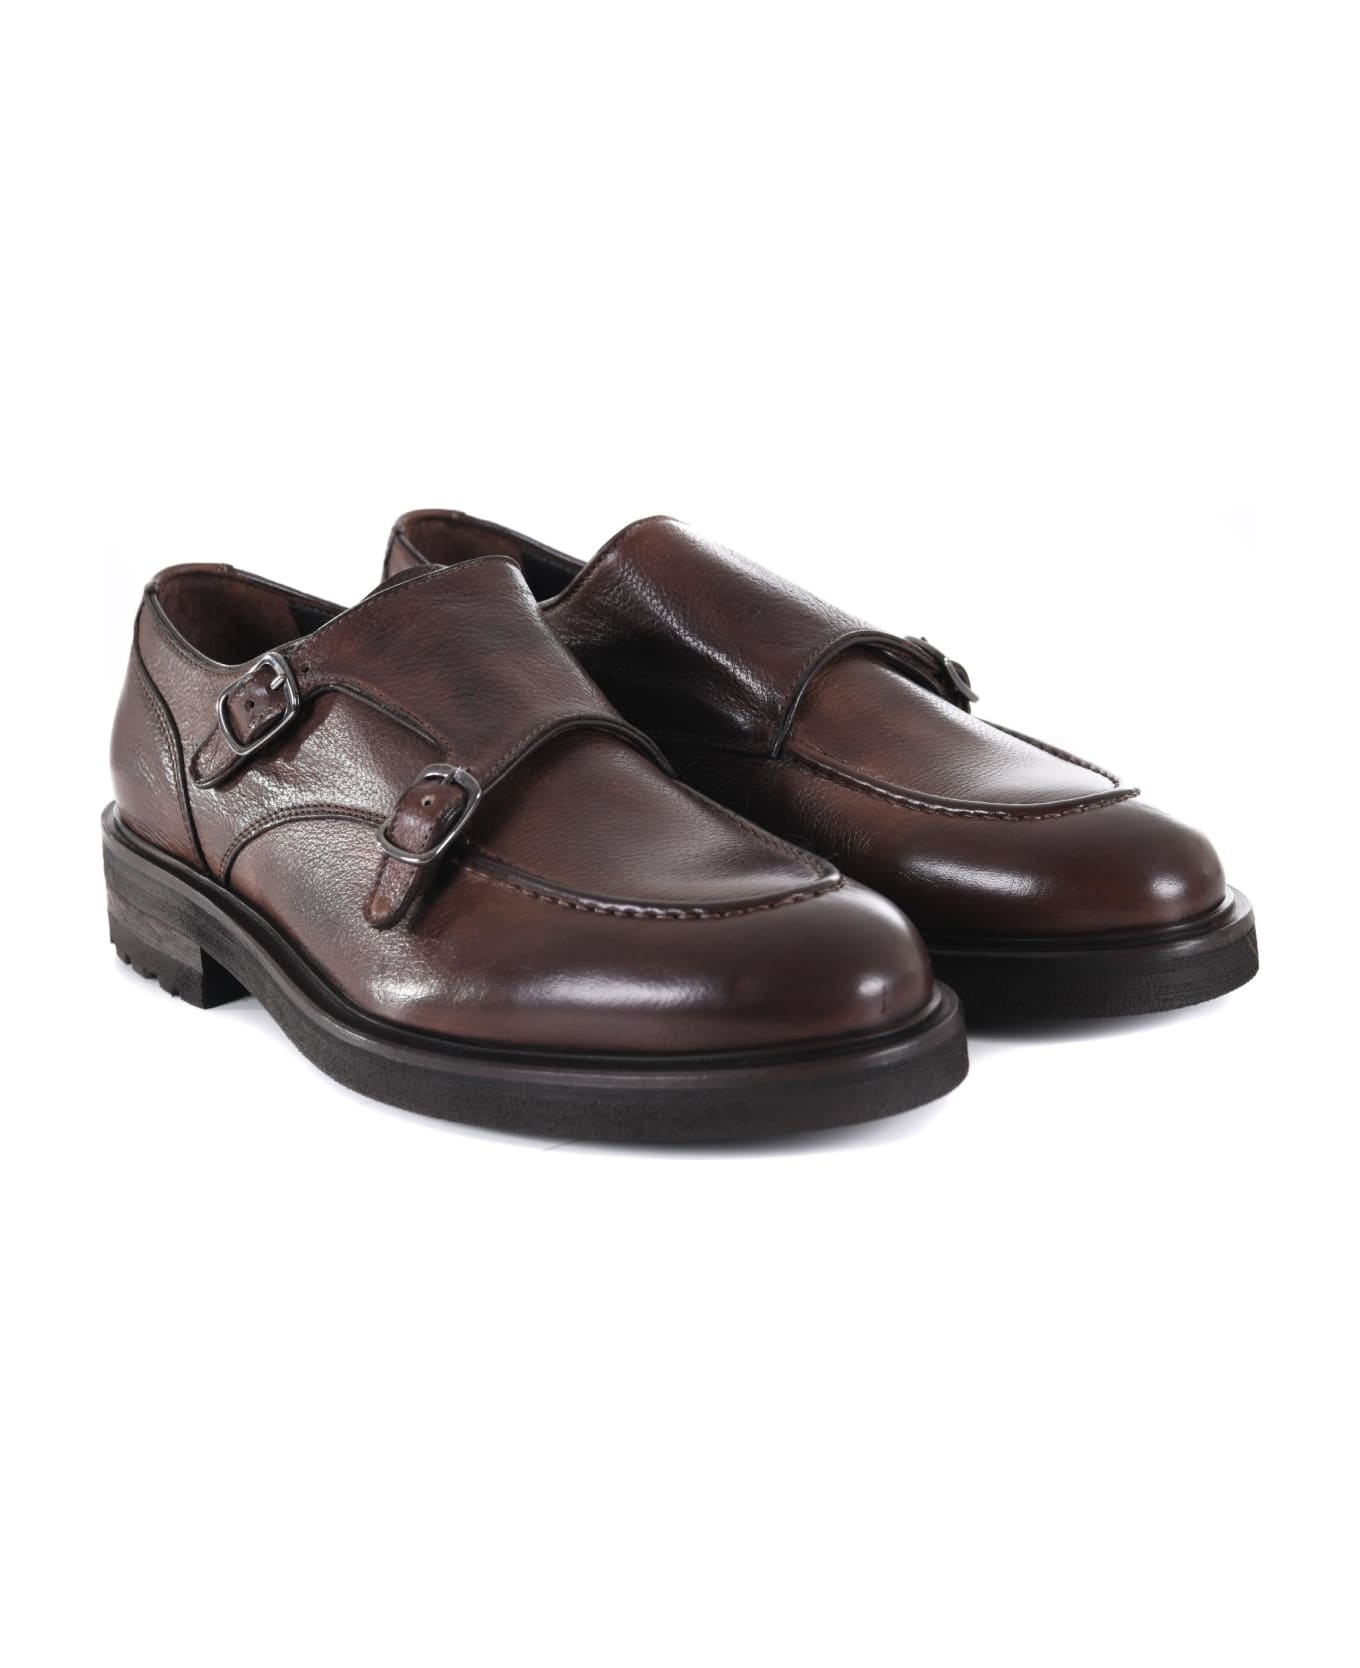 J. Wilton Jerold Wilton Shoes - Marrone